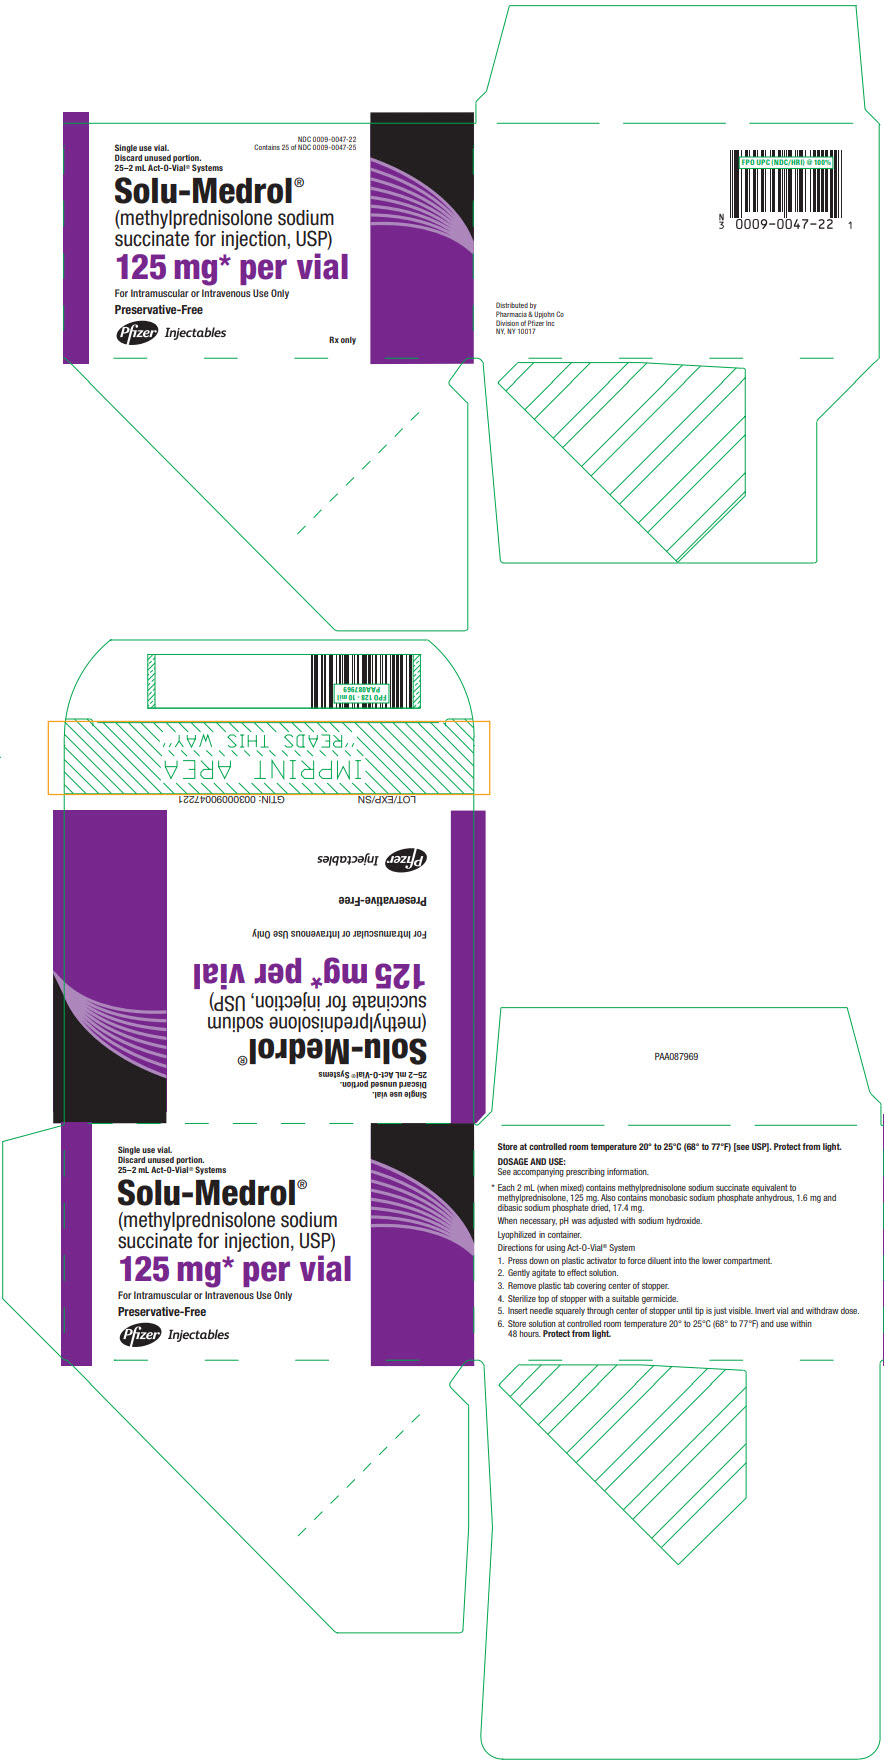 PRINCIPAL DISPLAY PANEL - 125 mg Vial Carton